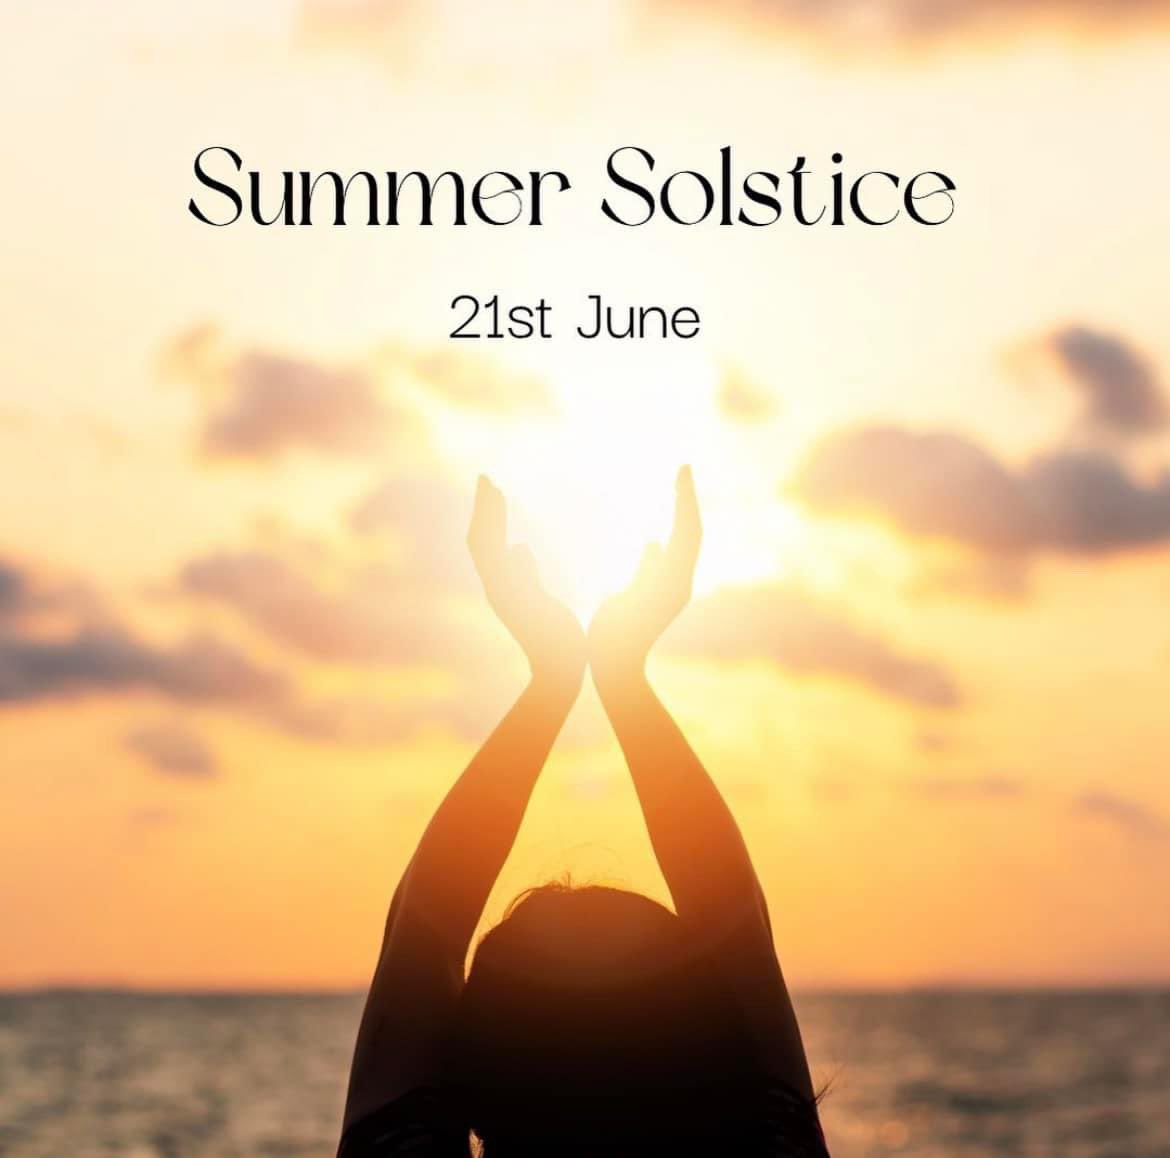 #HappySummerSolstice First day of Summer!